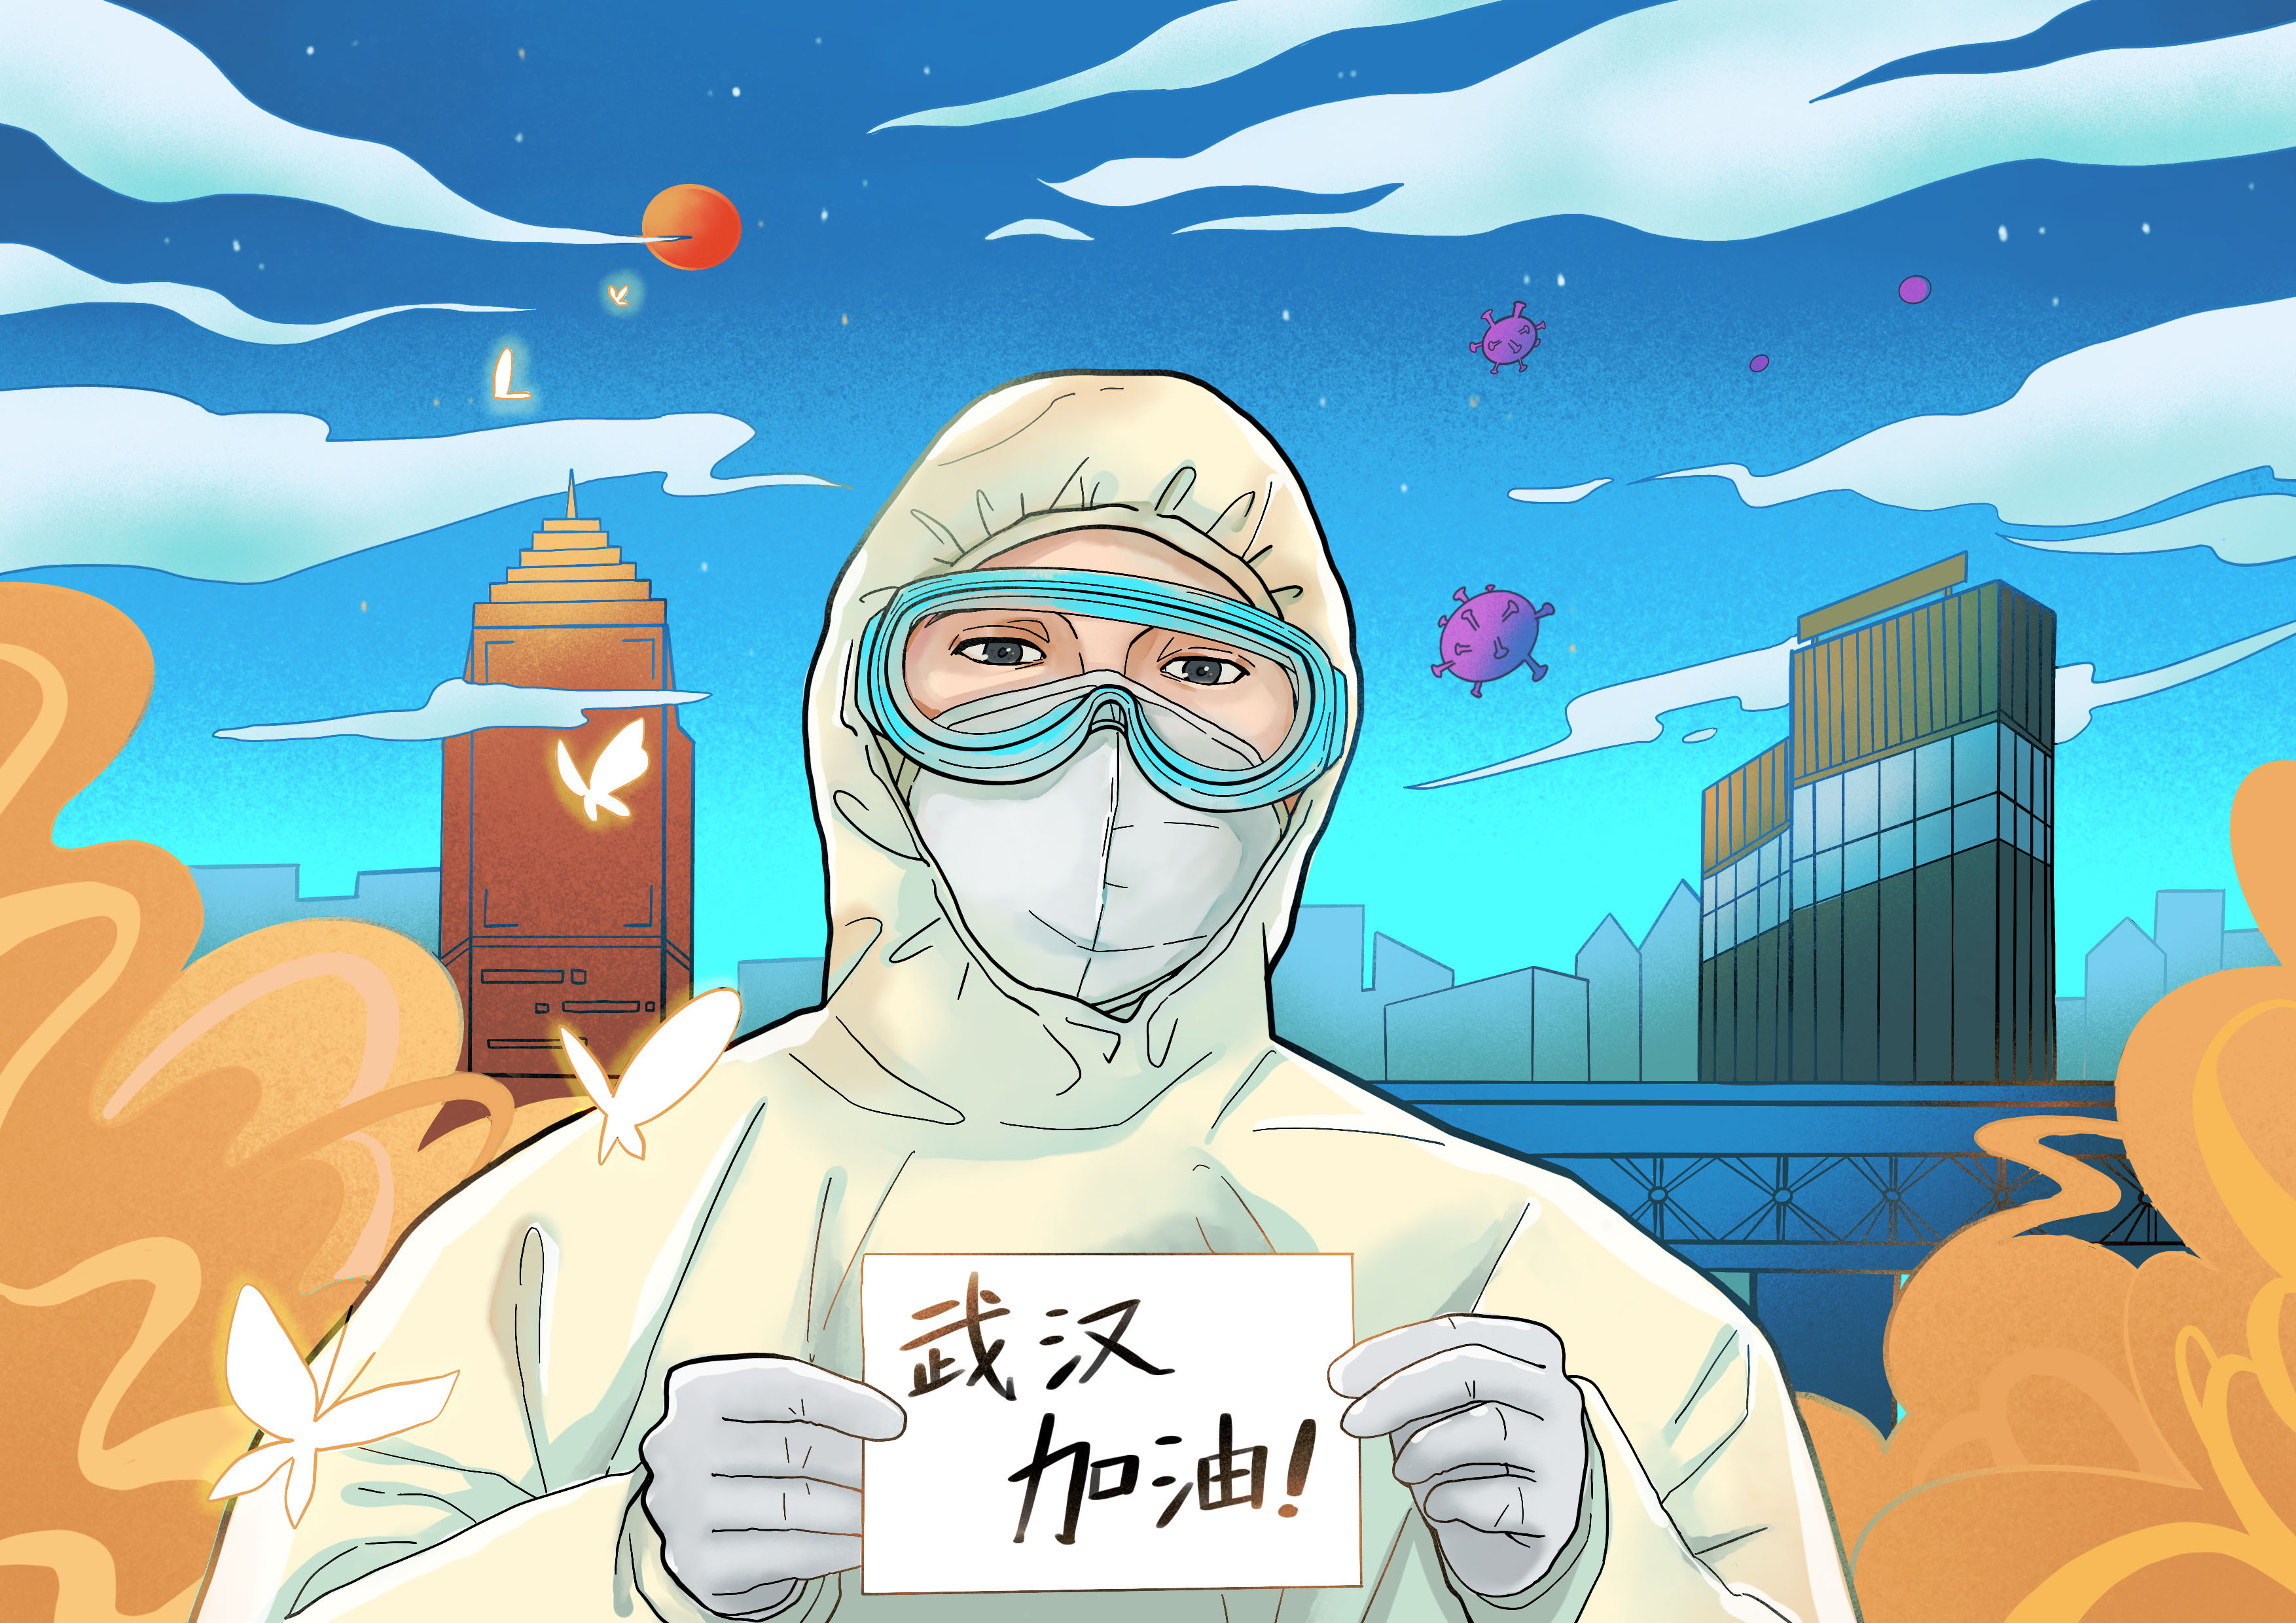 近日,中国疾控中心传染病处研究员冯录召指出:目前新型冠状病毒最主要